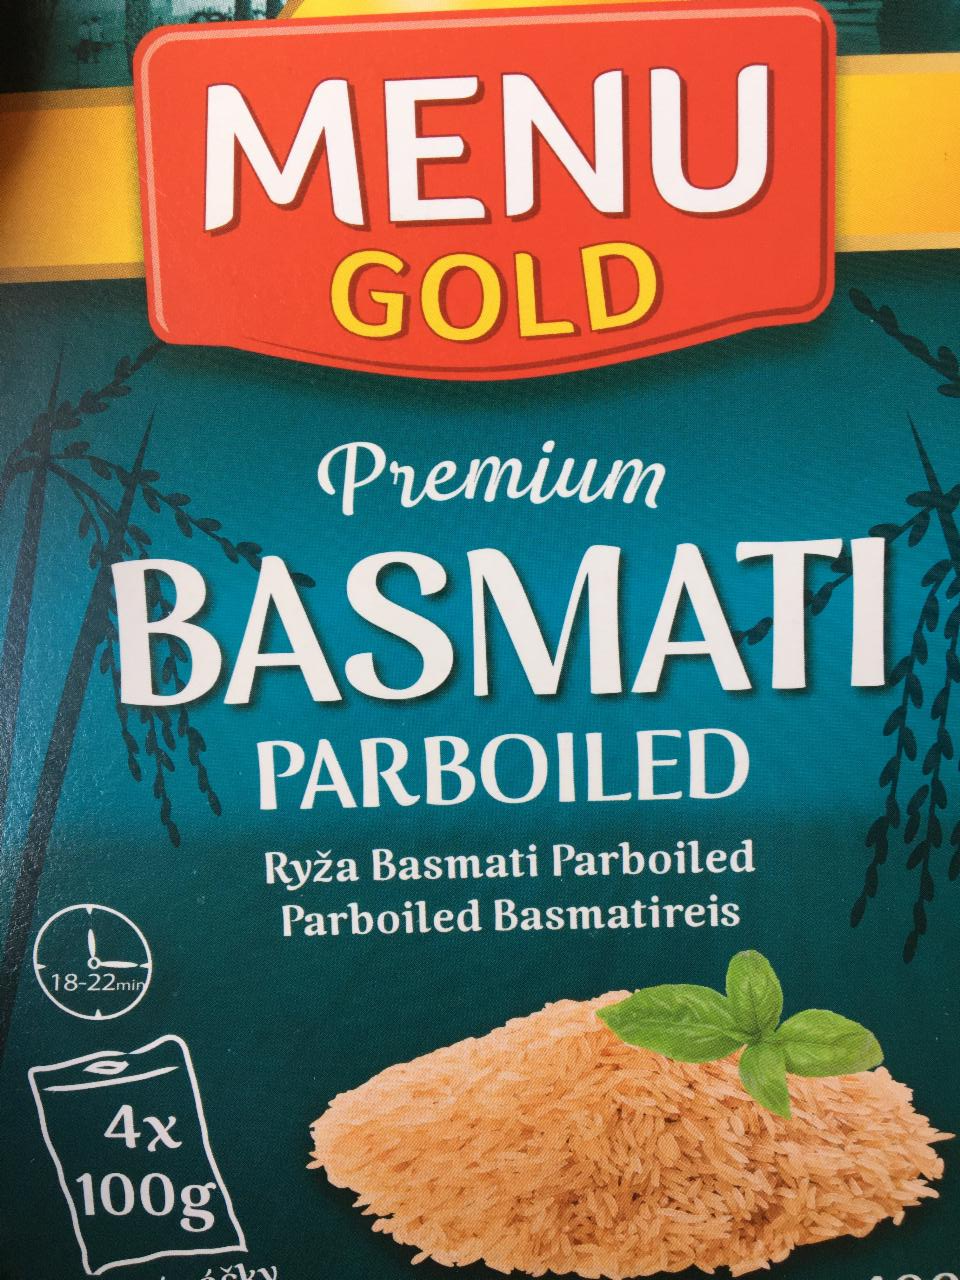 Fotografie - Premium Basmati Parboiled rýže Menu Gold